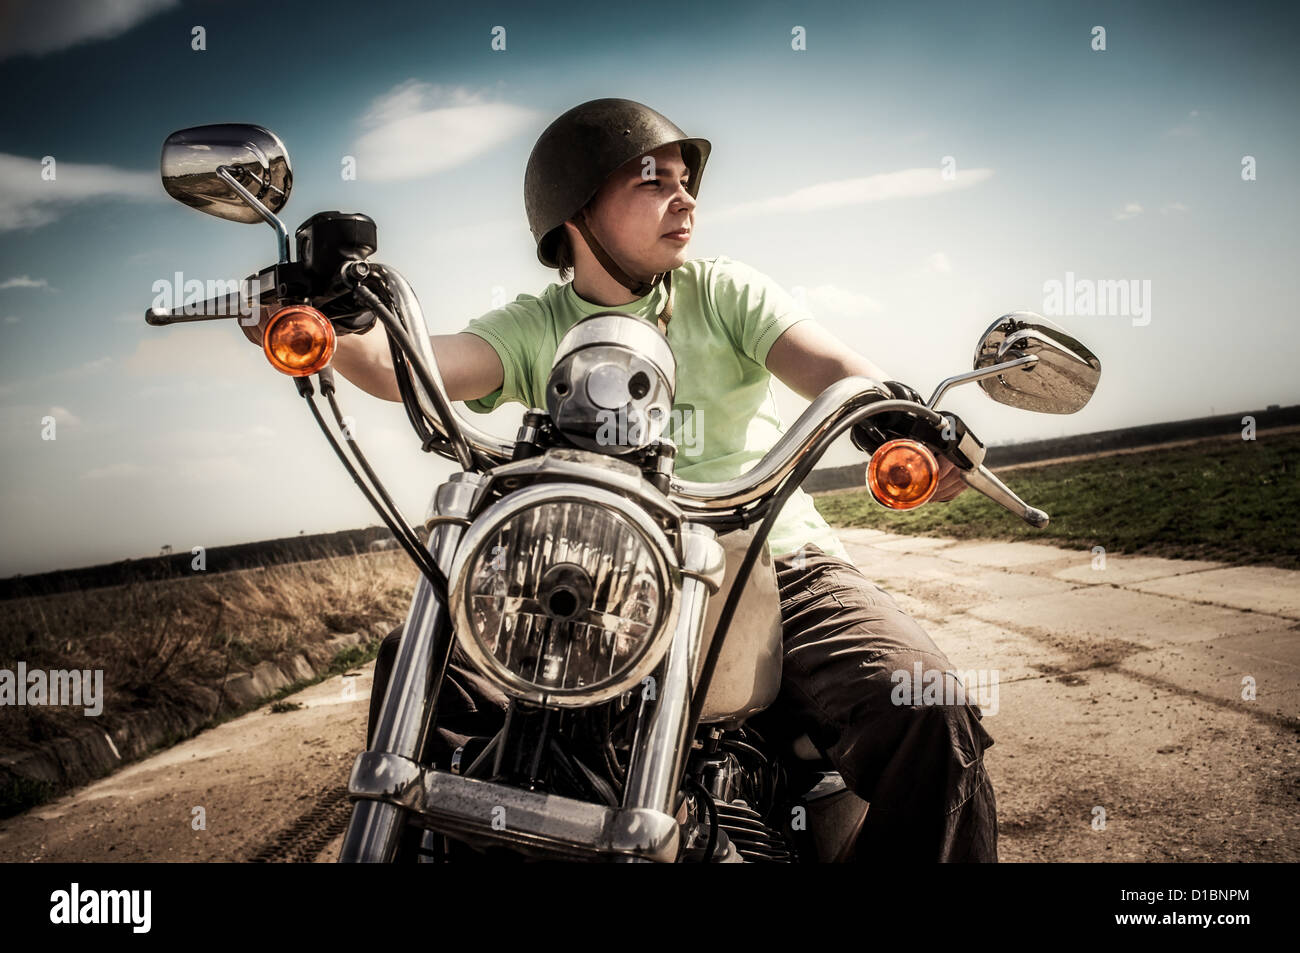 Les jeunes sur une moto motard Banque D'Images